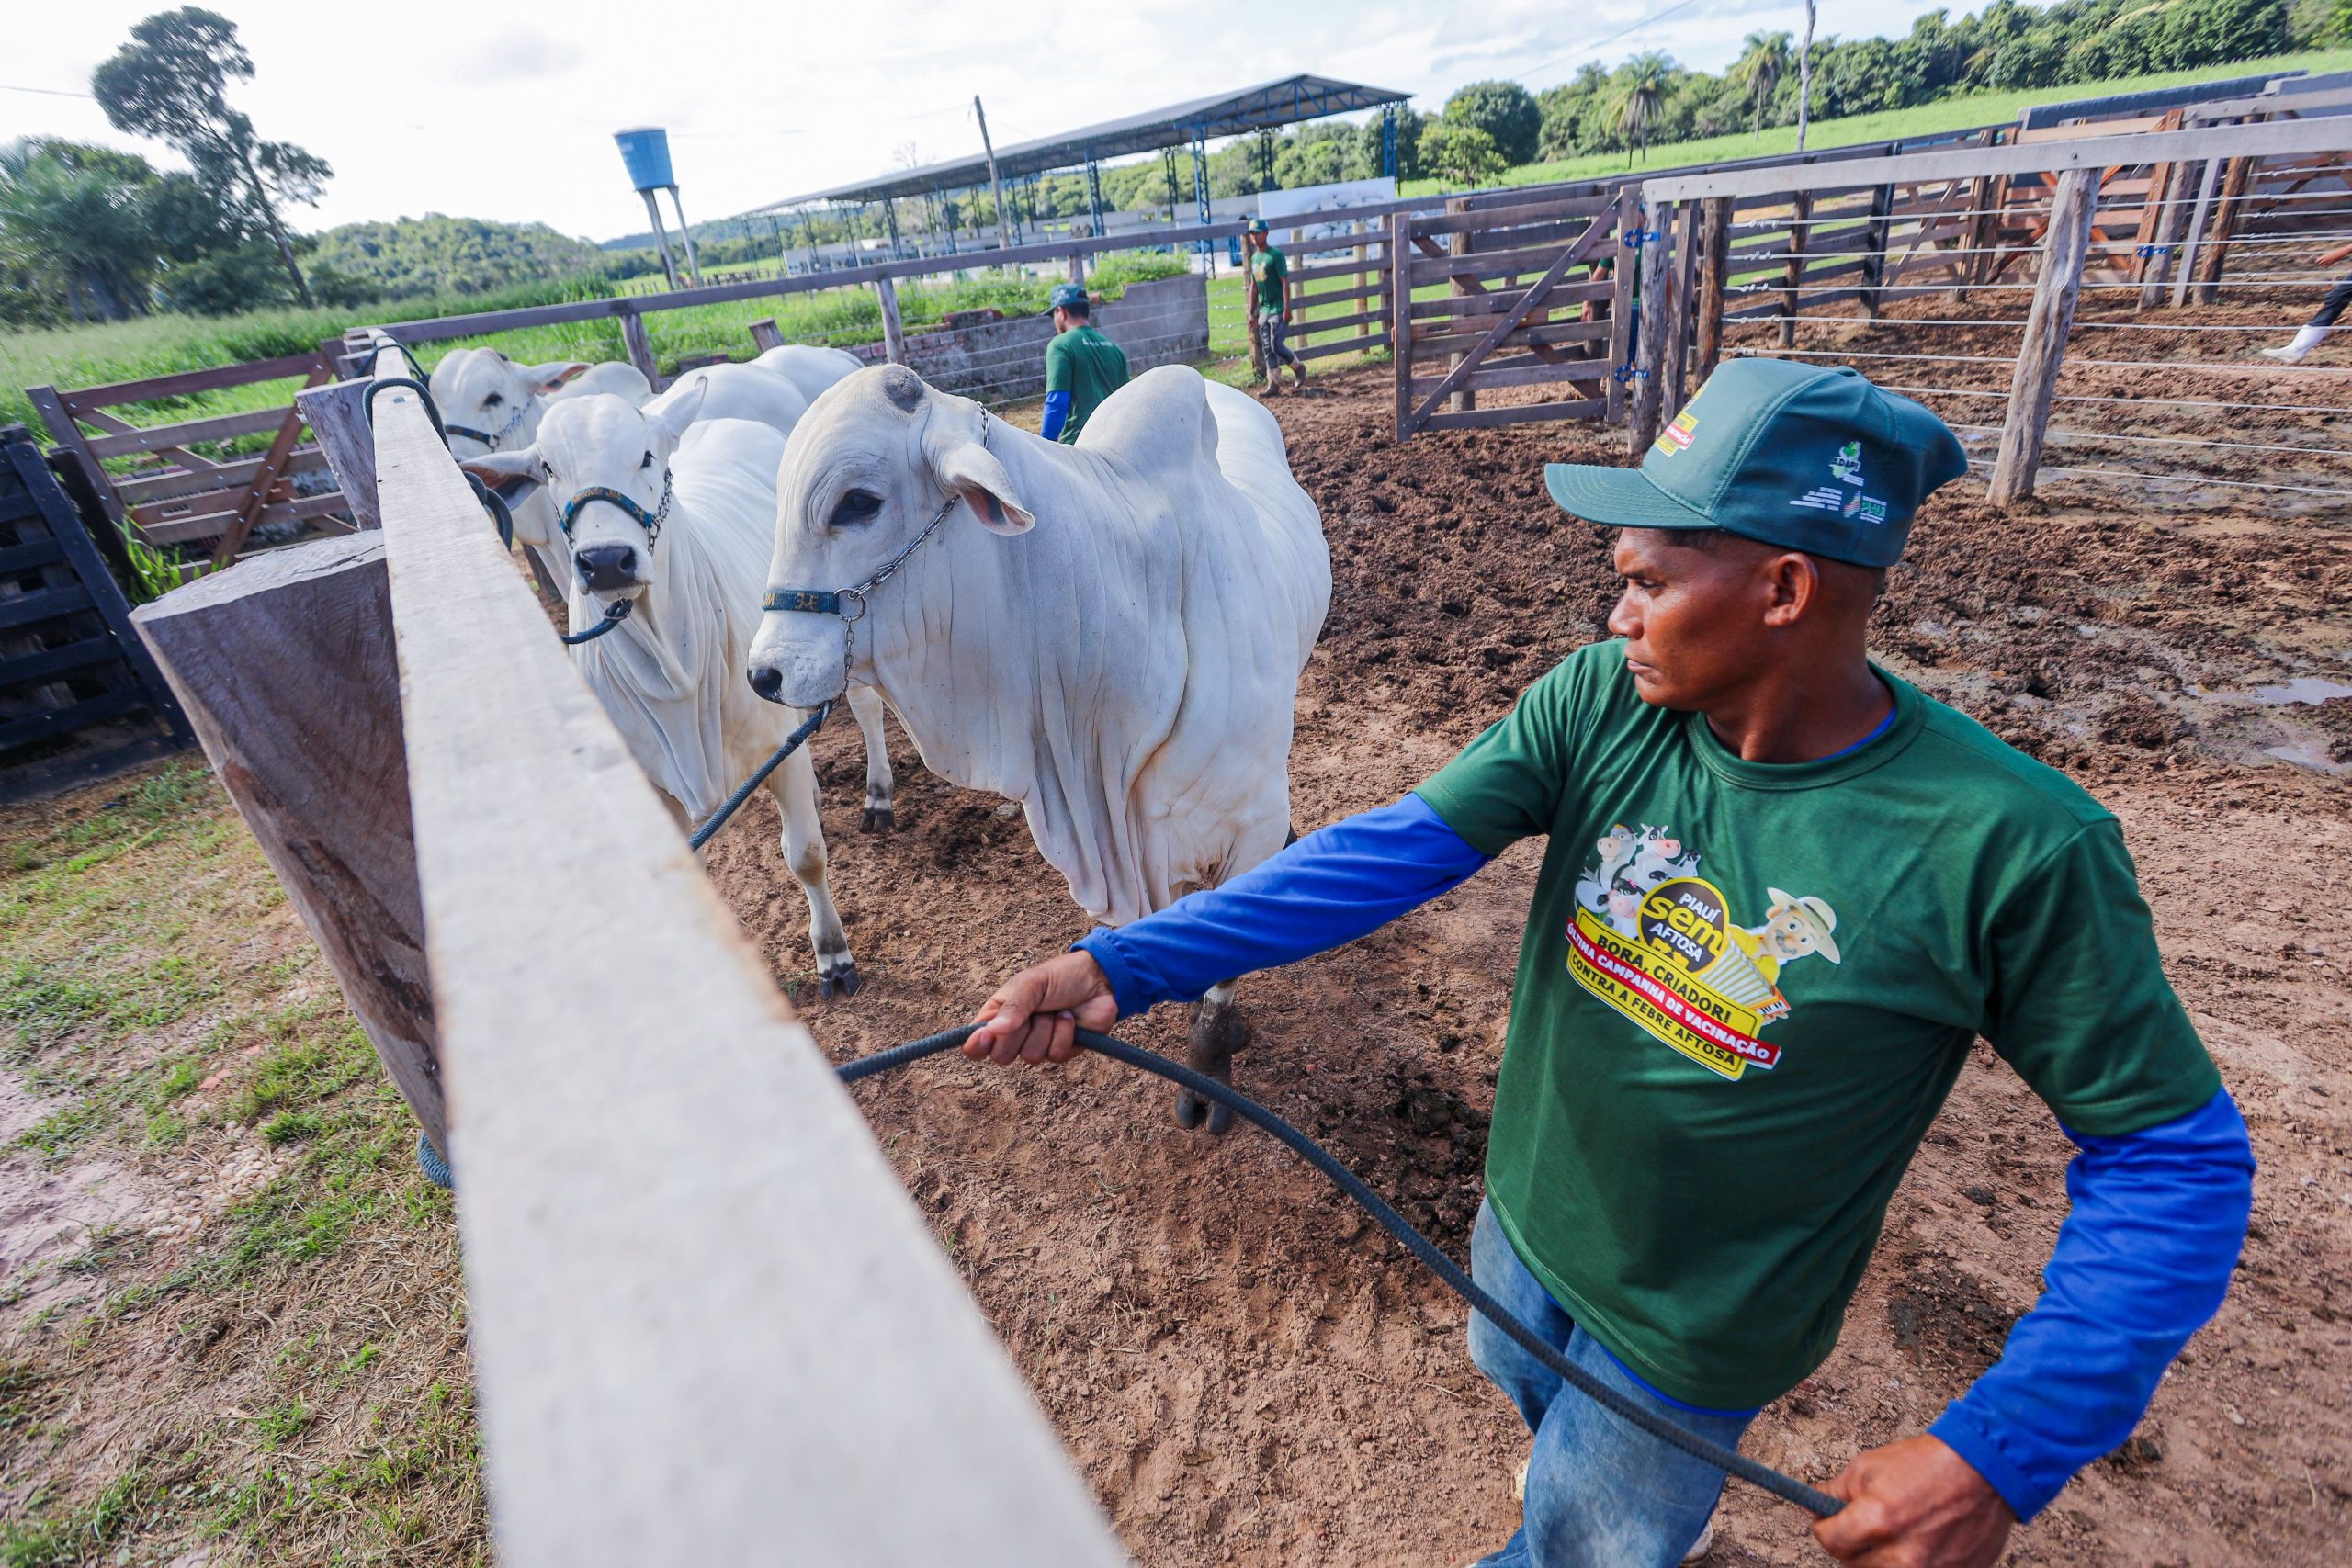 Piauí deve alcançar uma boa taxa de vacinação bovina para conquistar aprovação internacional (Foto: Gov PI)